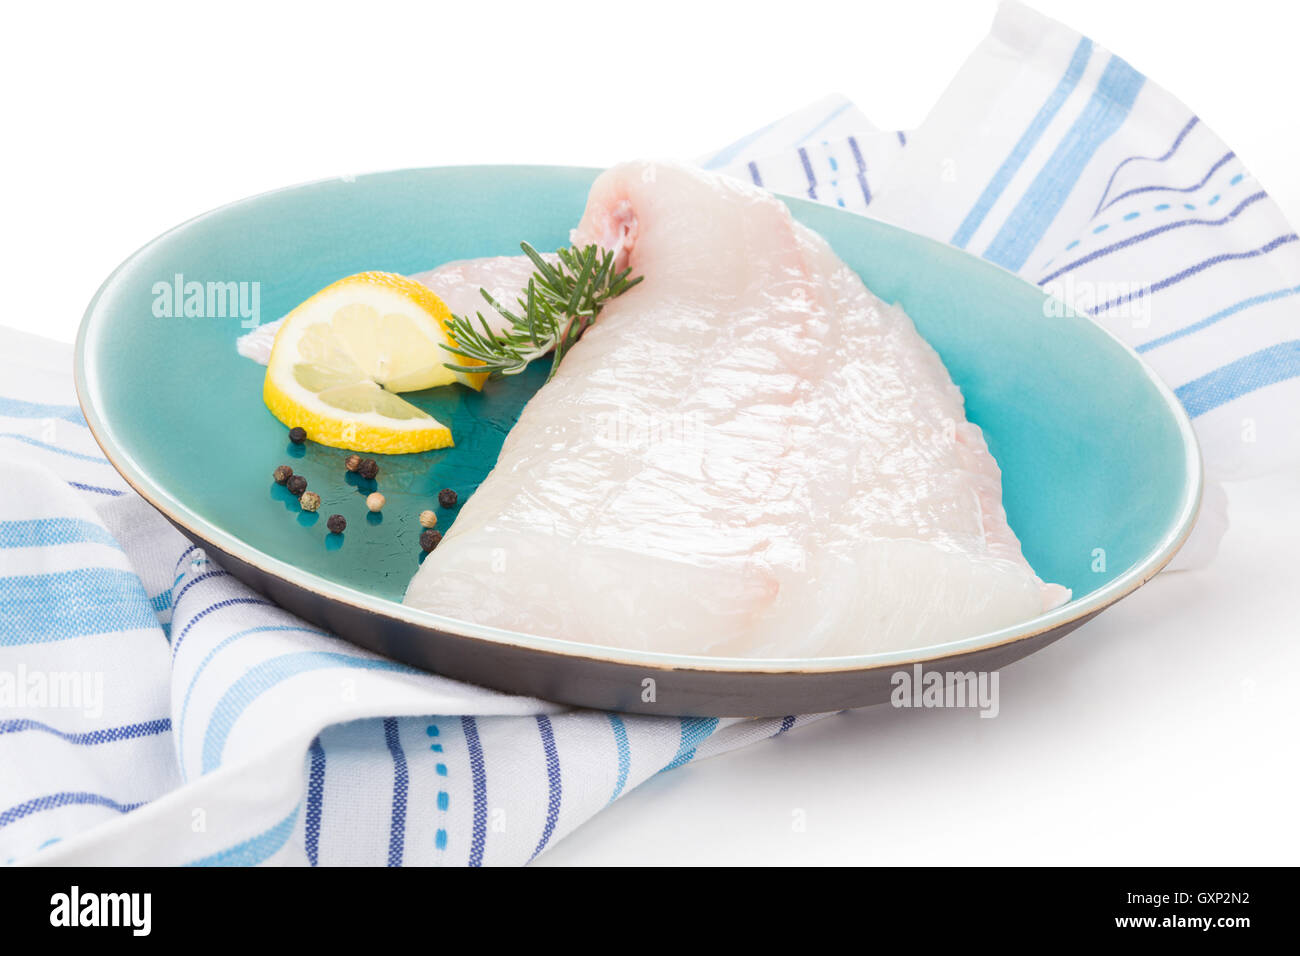 Rohe Heilbutt Filet auf Platte. Kulinarischen Meeresfrüchte kochen. Stockfoto